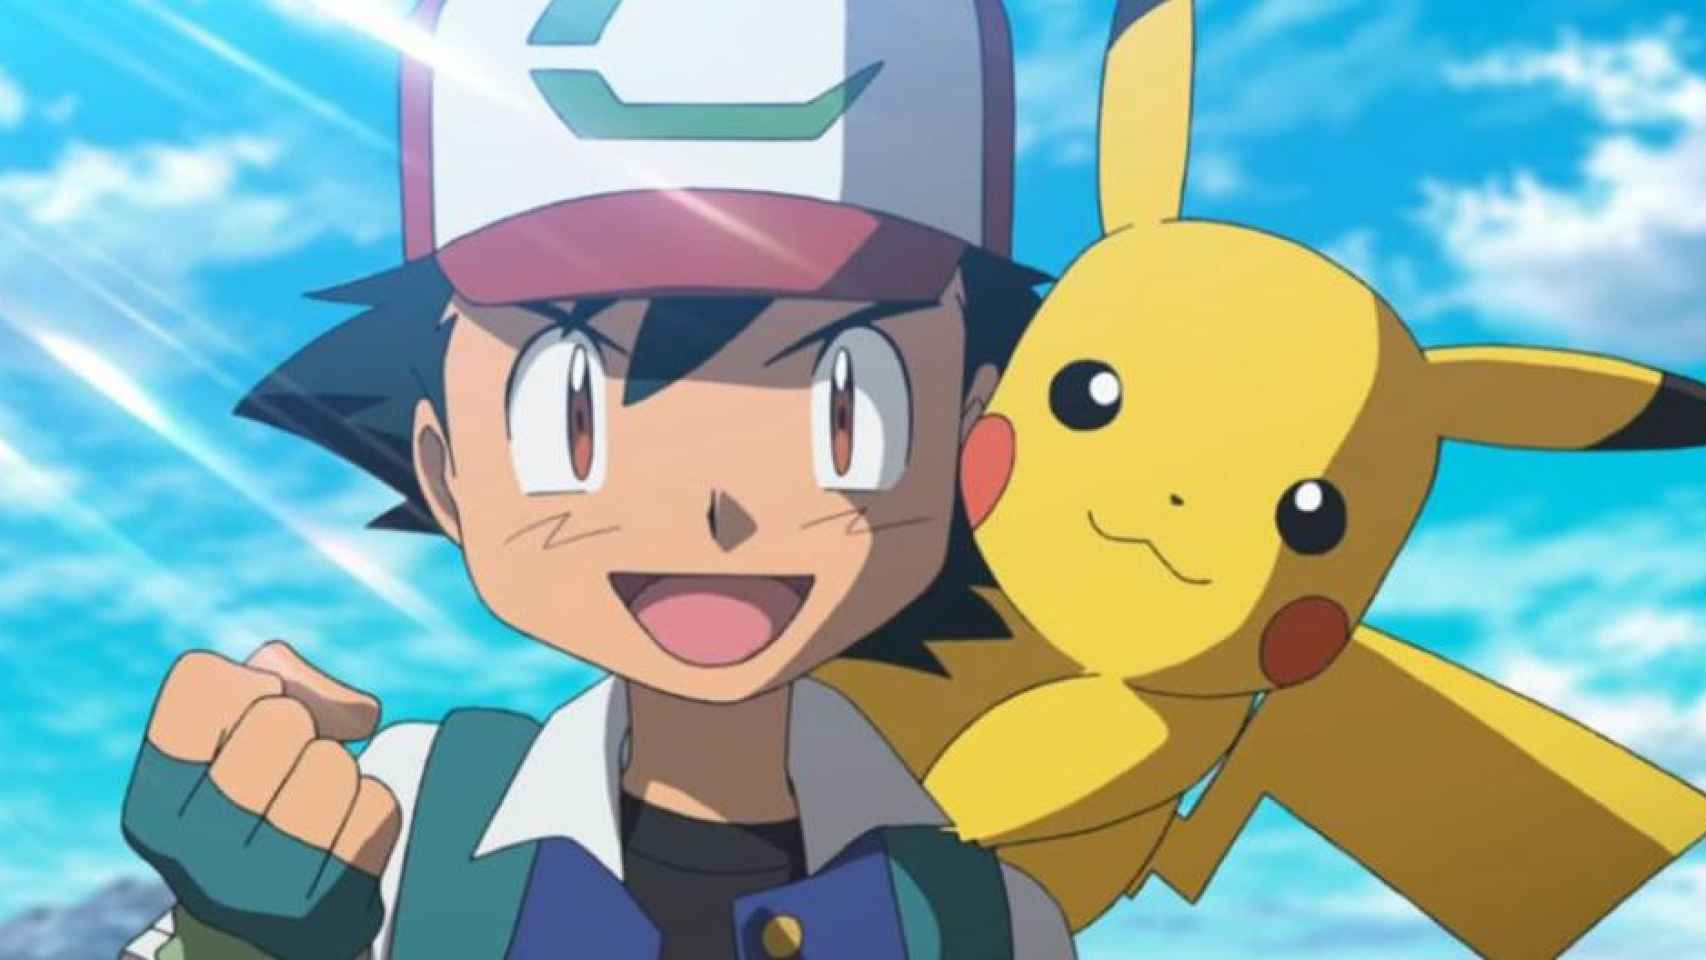 Personajes de la saga 'Pokémon' / THE POKÉMON COMPANY